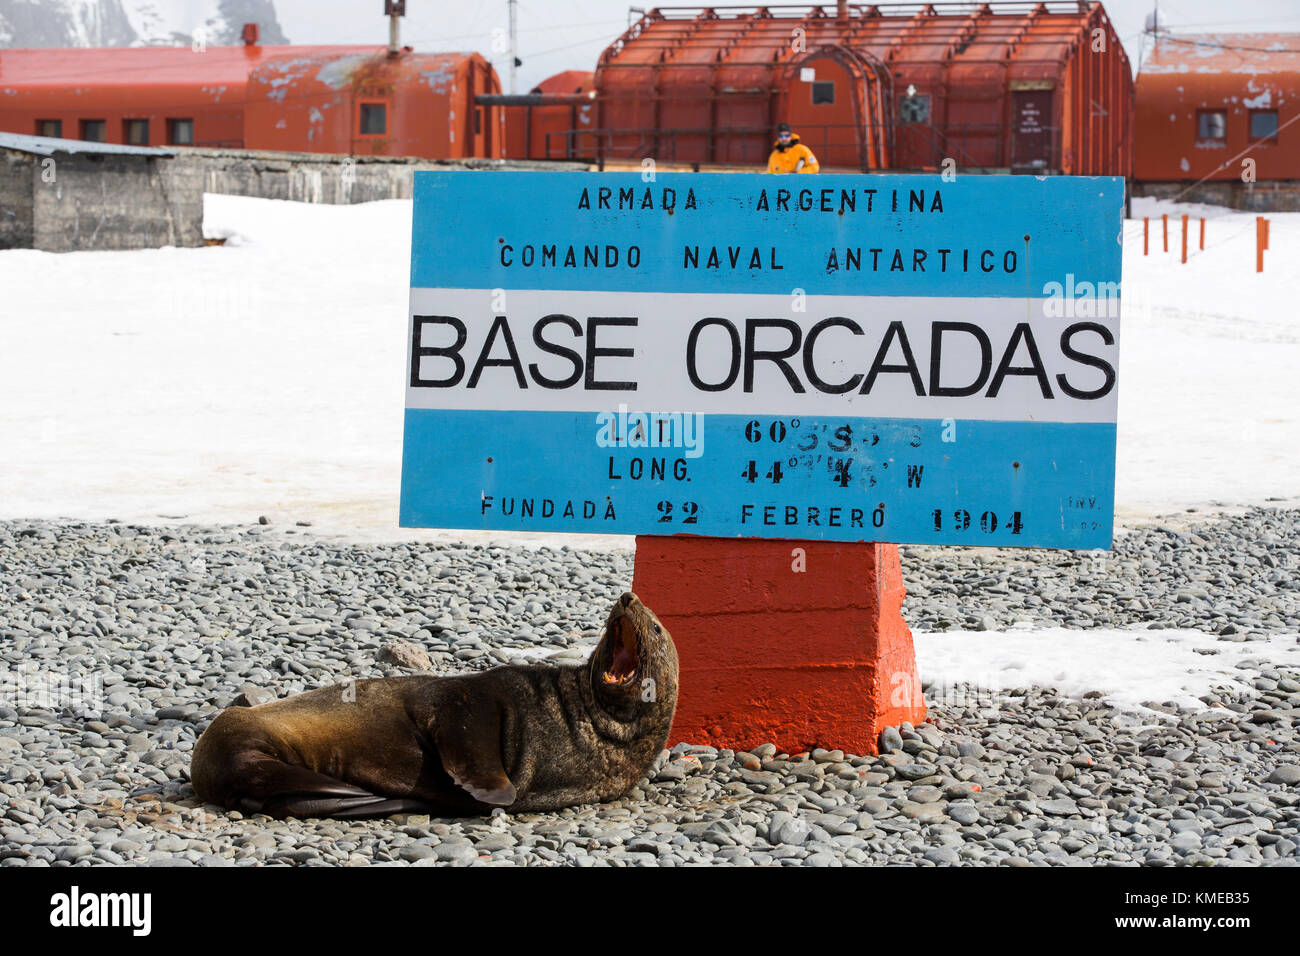 Antarktische Pelzrobben an der Basis Orcadas, die eine argentinische wissenschaftliche Station in der Antarktis ist, und die älteste der noch in Betrieb befindlichen Stationen in der Antarktis.Es befindet sich auf Laurie Island, einer der südlichen Orkney-Inseln, direkt vor der Antarktischen Halbinsel.die Antarktische Halbinsel ist einer der am schnellsten wärmenden Orte auf dem Planeten. Stockfoto